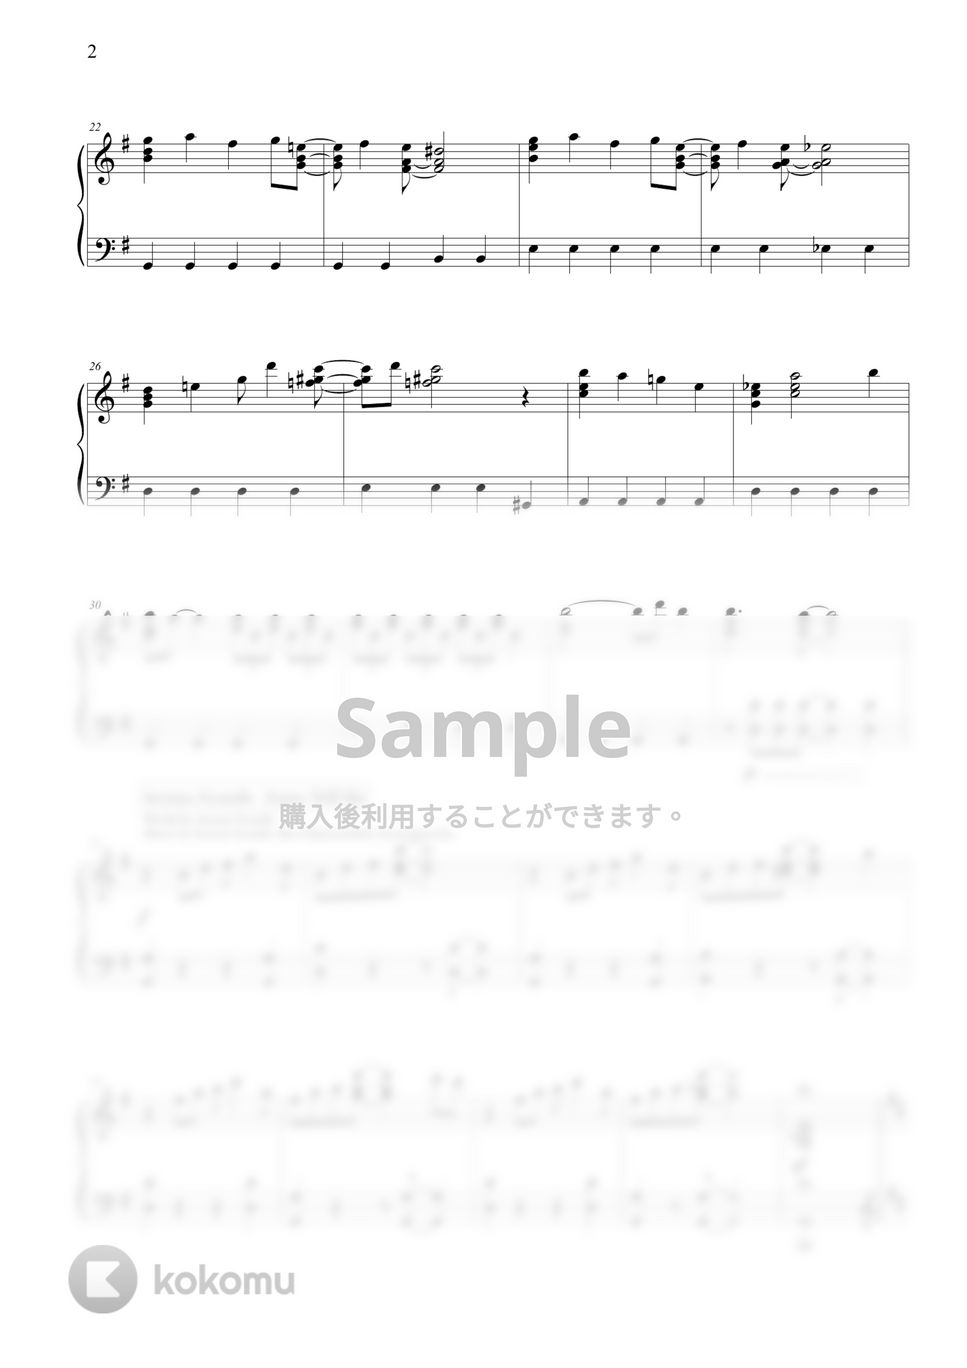 キャロルメドレー (Carol Medley) - クリスマスポップメドレー (Christmas Pop Medley) by THIS IS PIANO